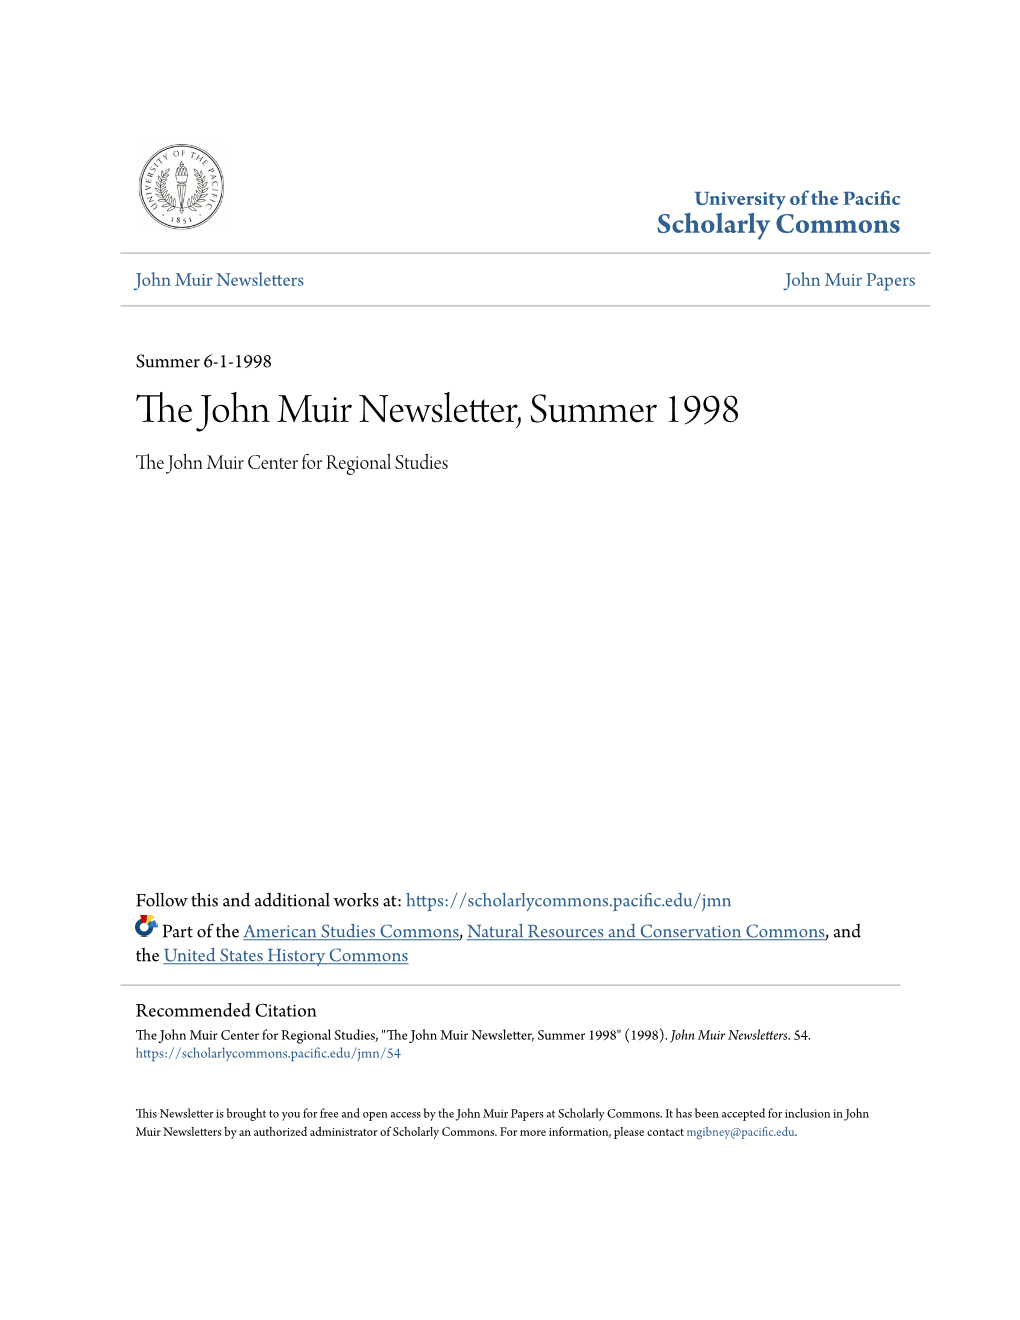 The John Muir Newsletter, Summer 1998